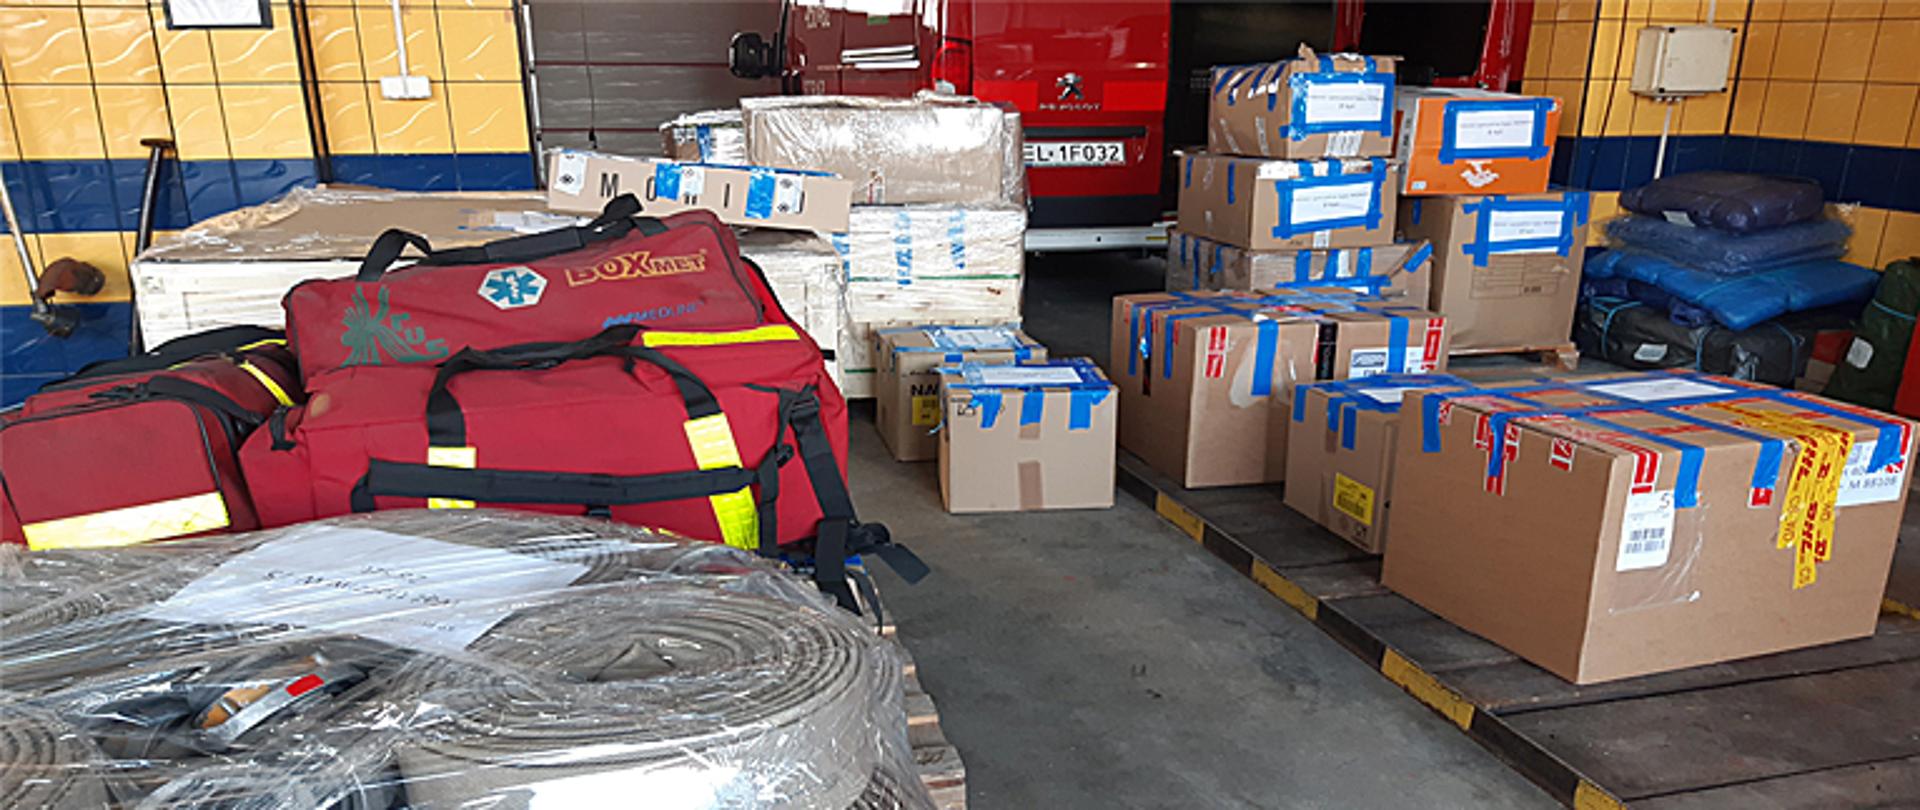 Kilkanaście pudeł kartonowych stojących na sobie leży na garażu, po lewej stronie trzy czerwone torby medyczne, na pierwszym planie węże strażackie w torbach foliowych